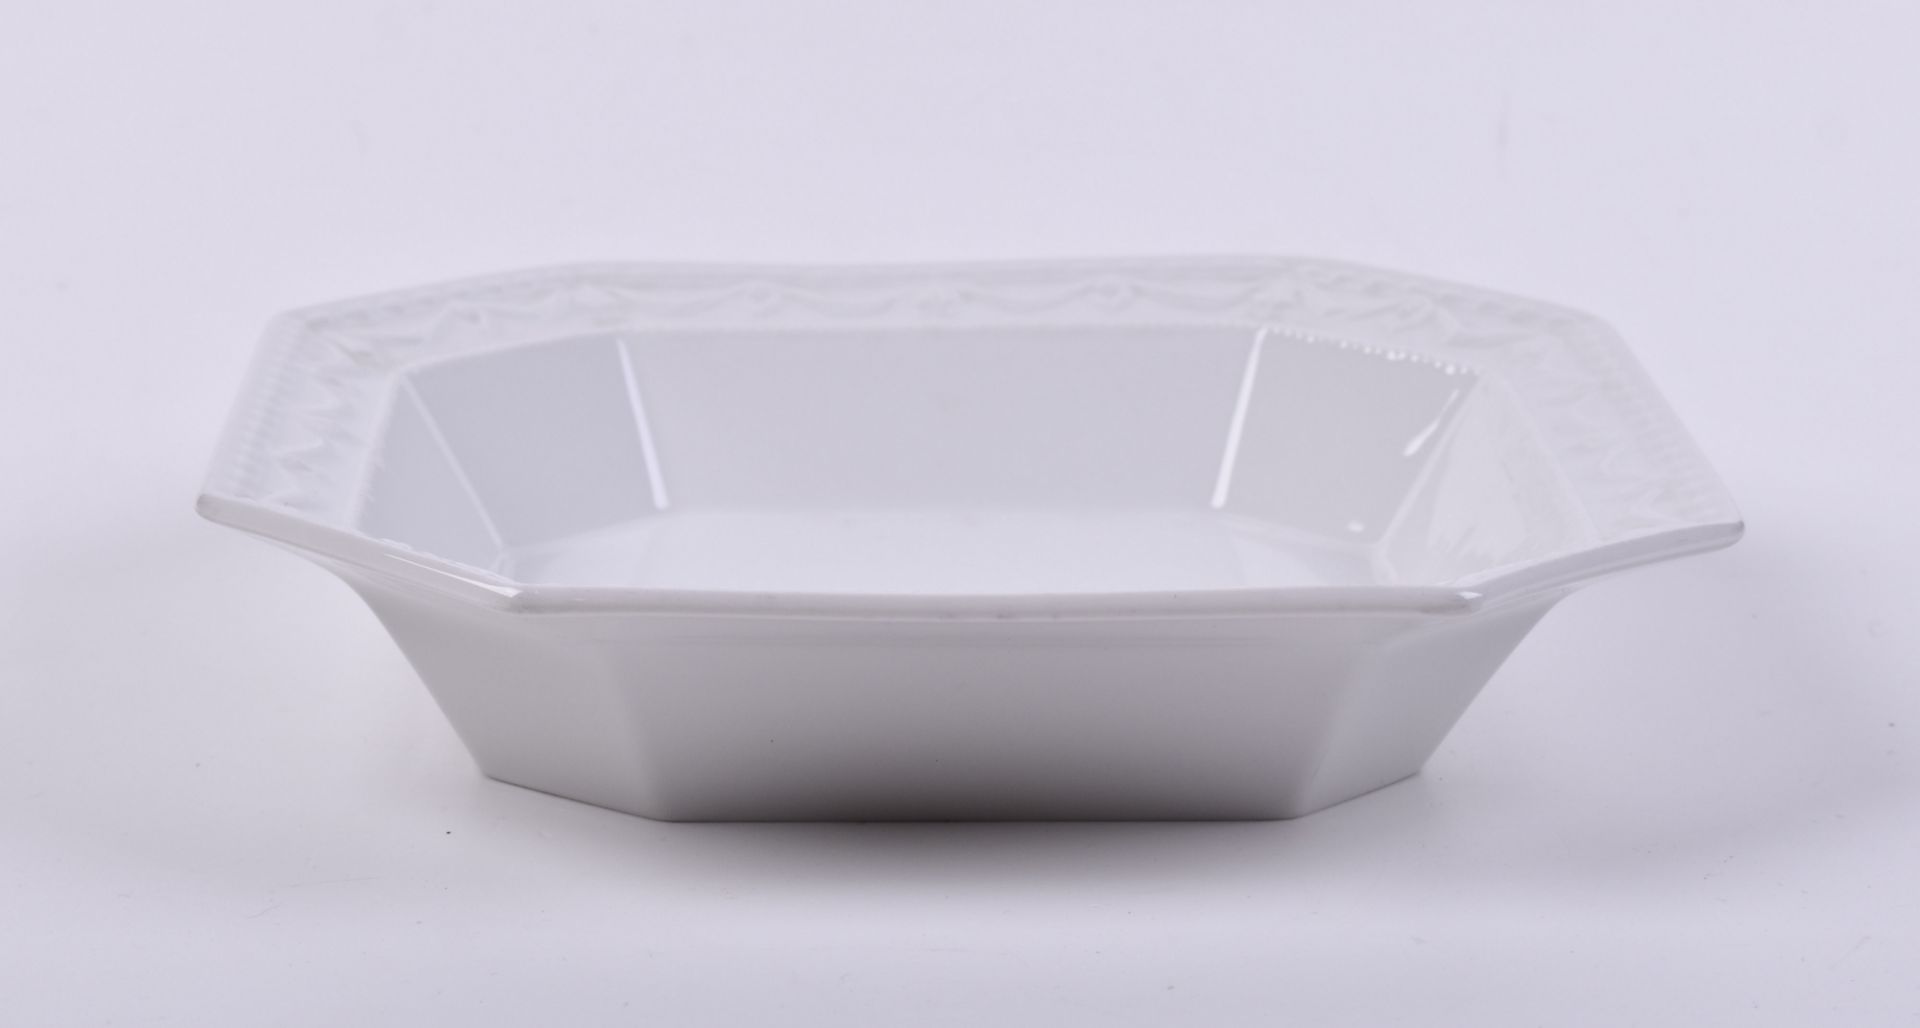  Serving bowl KPM Kurland - Image 2 of 4